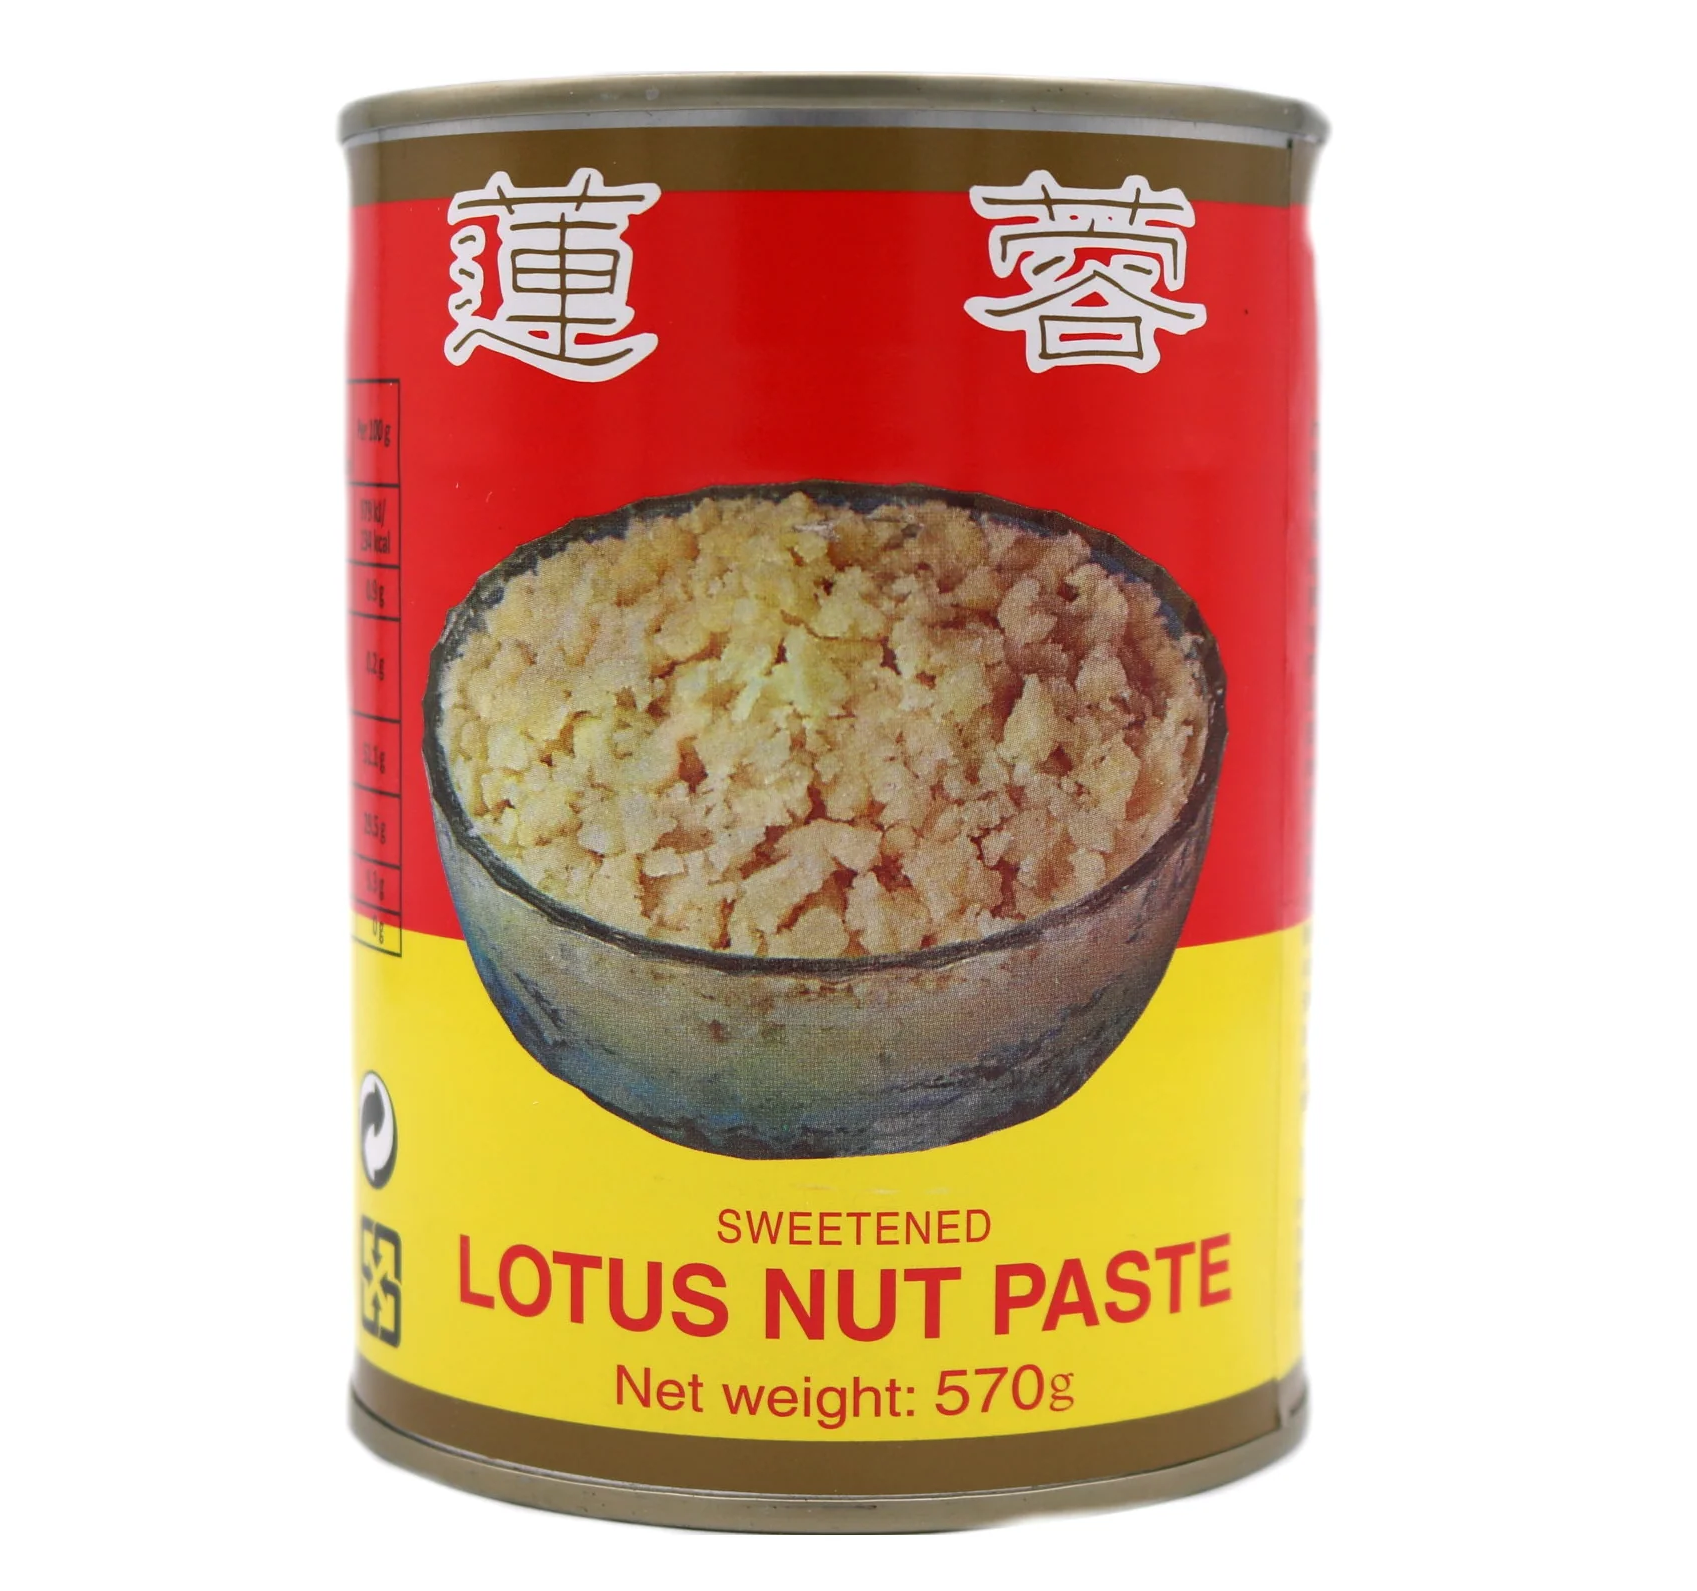 Wu Chung Sweetened lotus nut paste